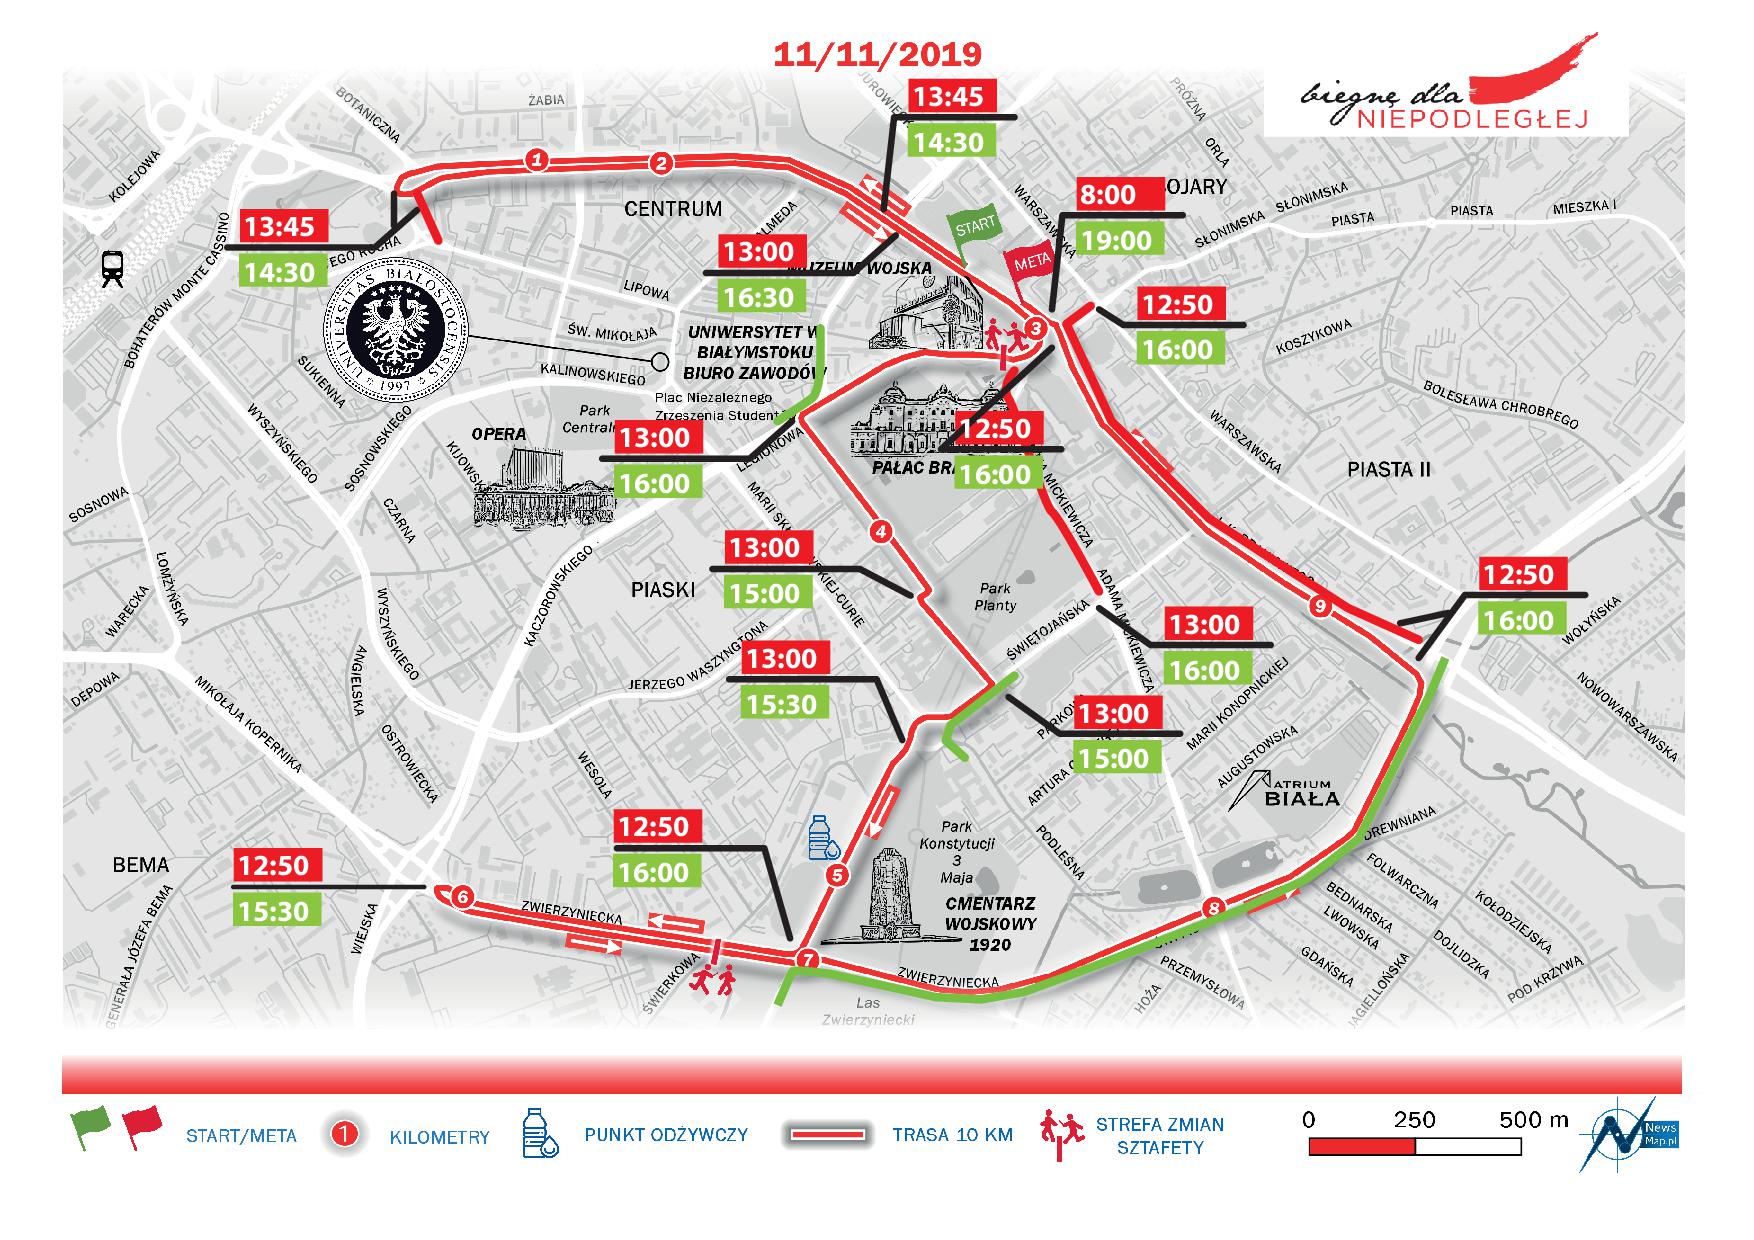 Mapa z harmonogramem zamykanych ulic podczas wydarzenia Biegnę dla niepodległej 11 listopada 2019 roku